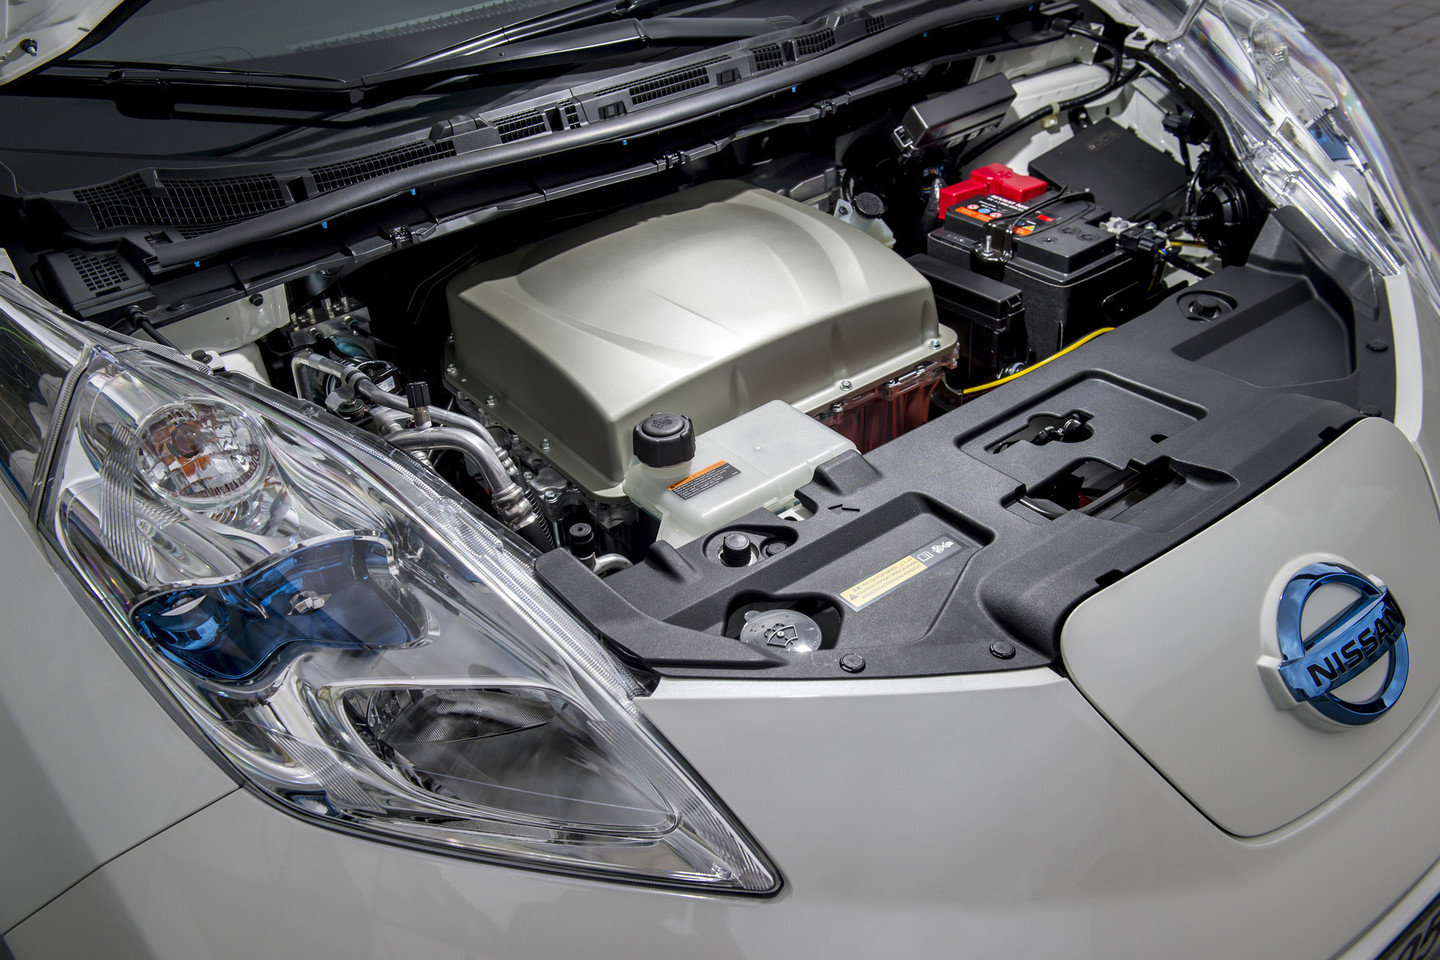 Elektromobilis aprūpintas visa komforto įranga, naudojama ir tradiciniais degalais varomuose automobiliuose.<br>Gamintojo nuotr.